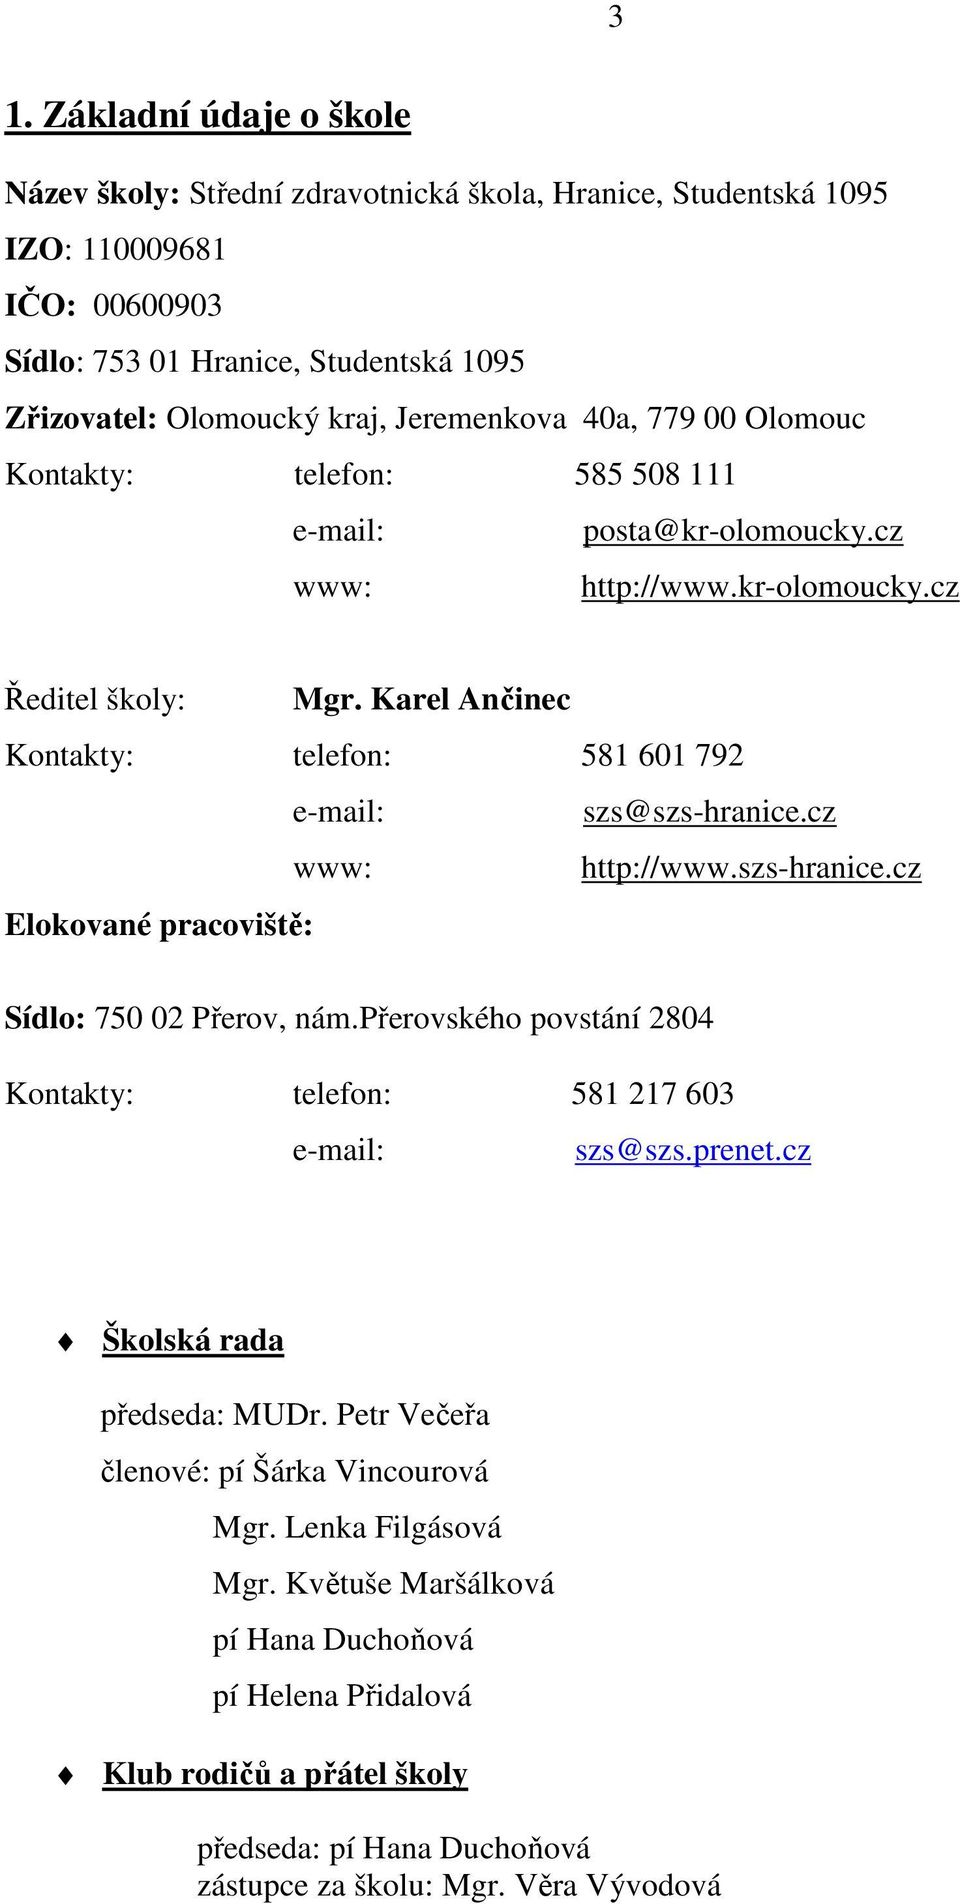 Karel Ančinec Kontakty: telefon: 581 601 792 e-mail: szs@szs-hranice.cz www: http://www.szs-hranice.cz Elokované pracoviště: Sídlo: 750 02 Přerov, nám.